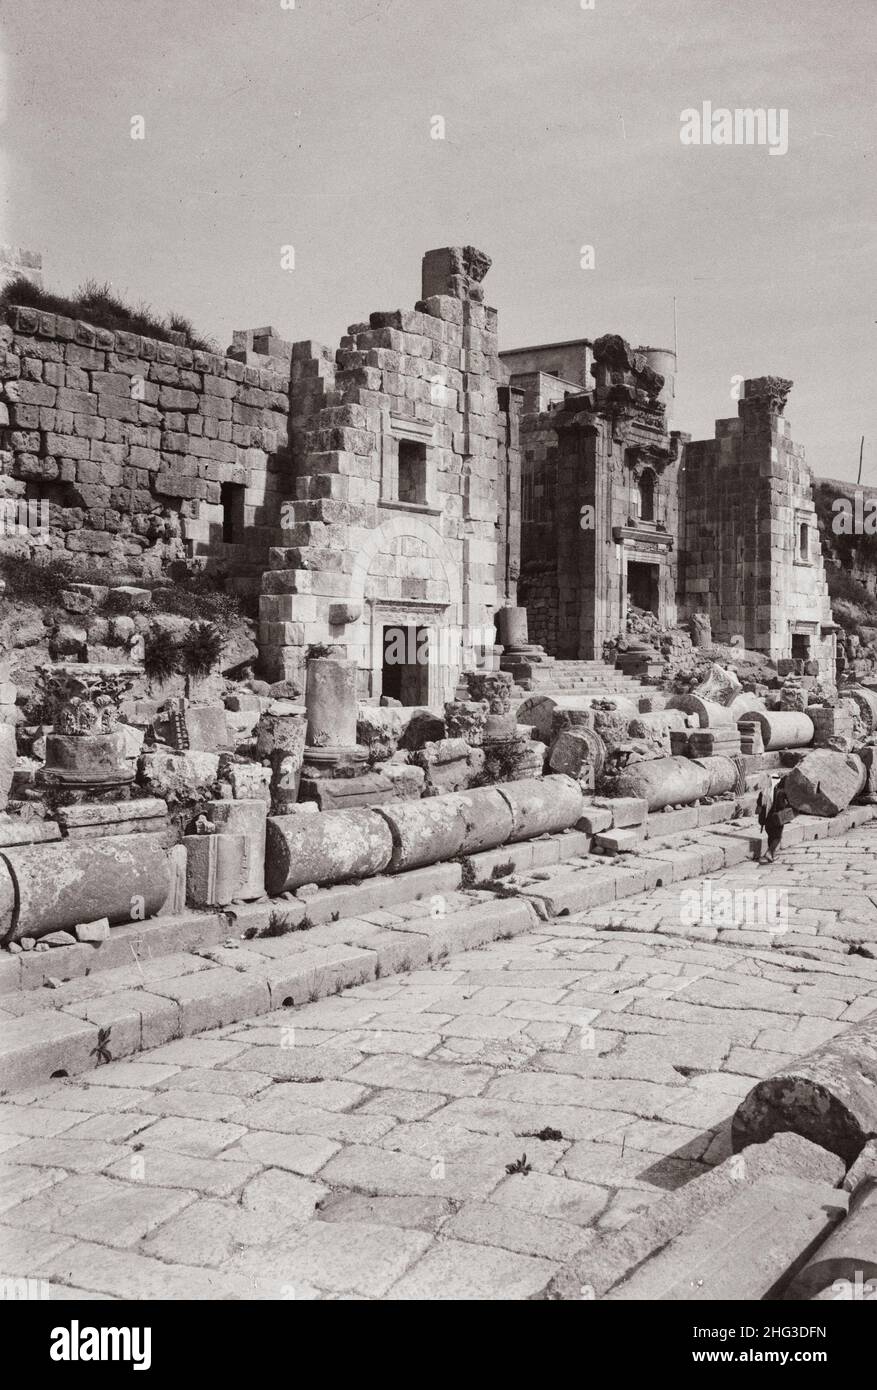 Foto vintage de las ruinas de Jerash (Gerasa). Puerta al Templo de Artemisa. Triple puerta de entrada y ascenso desde la avenida principal. Norte de Jordania. 1920s Foto de stock